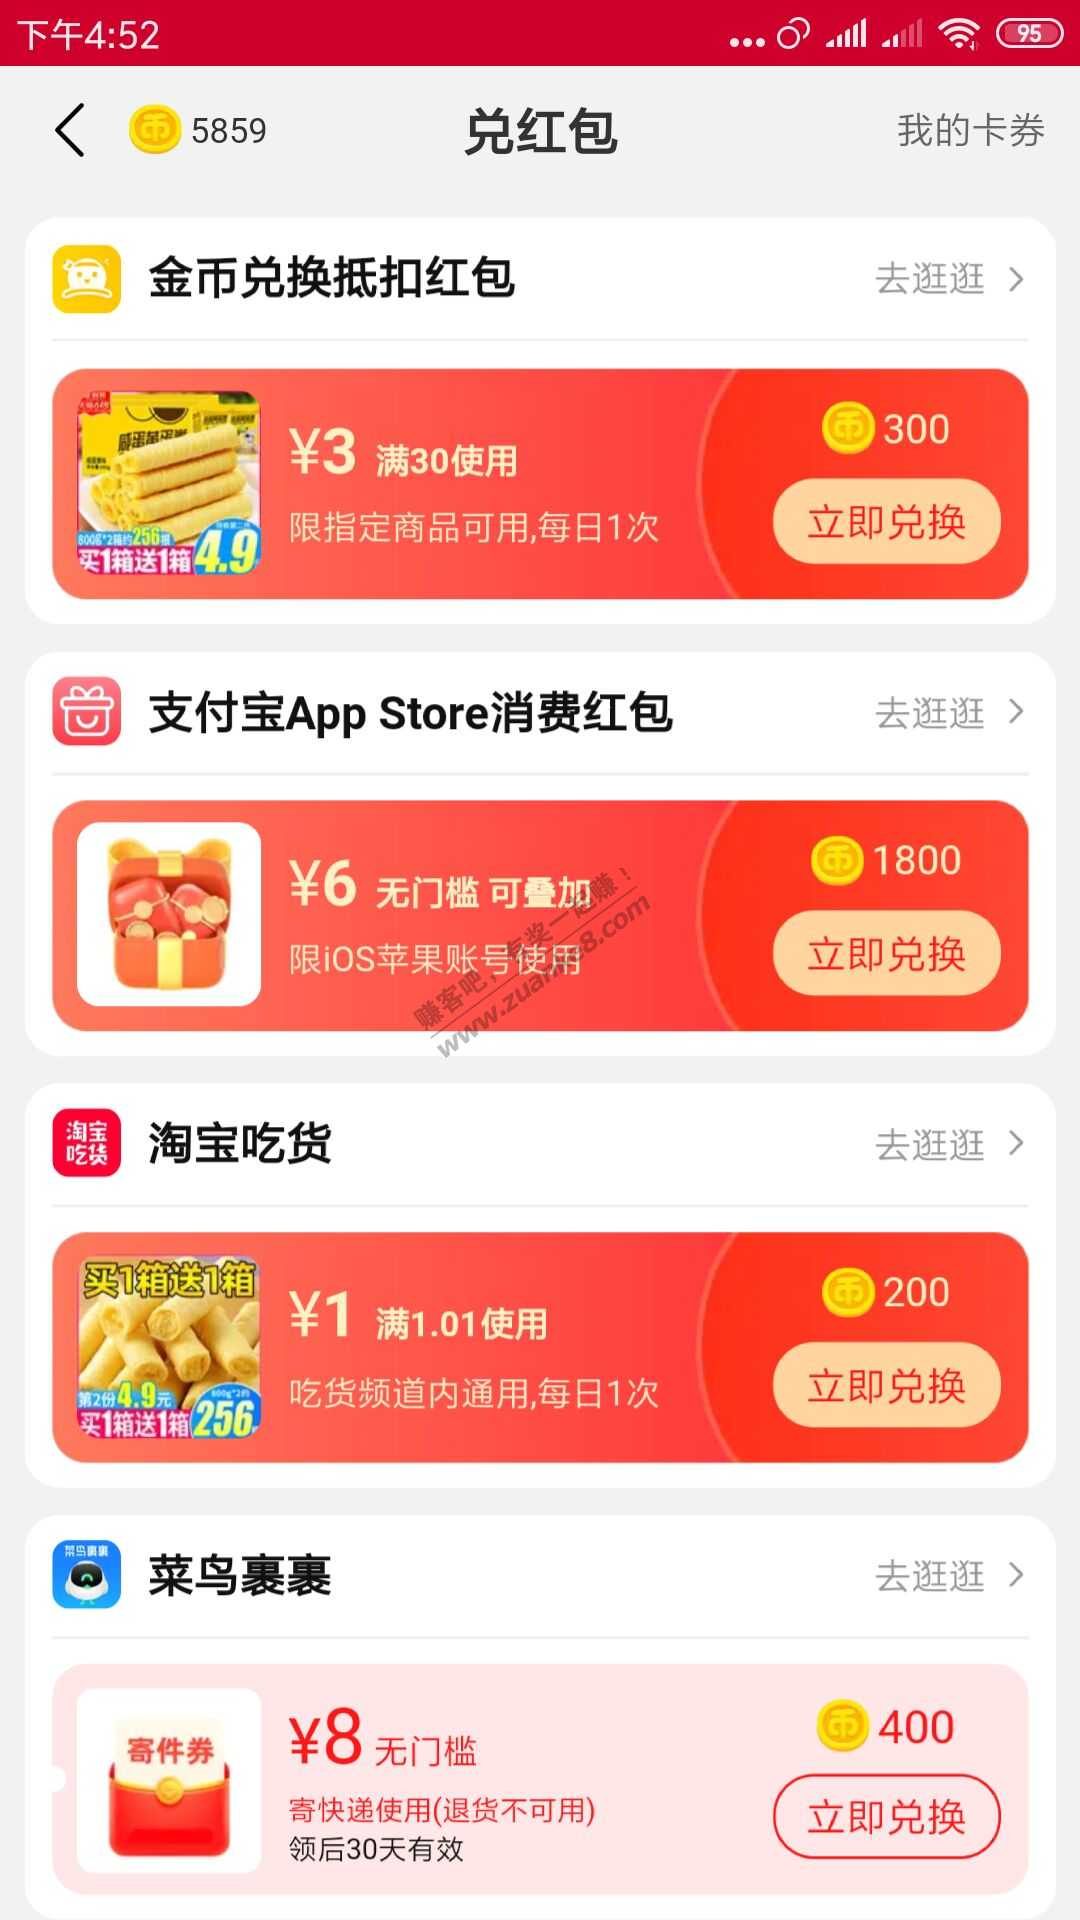 支付宝App Store 消费红包-惠小助(52huixz.com)